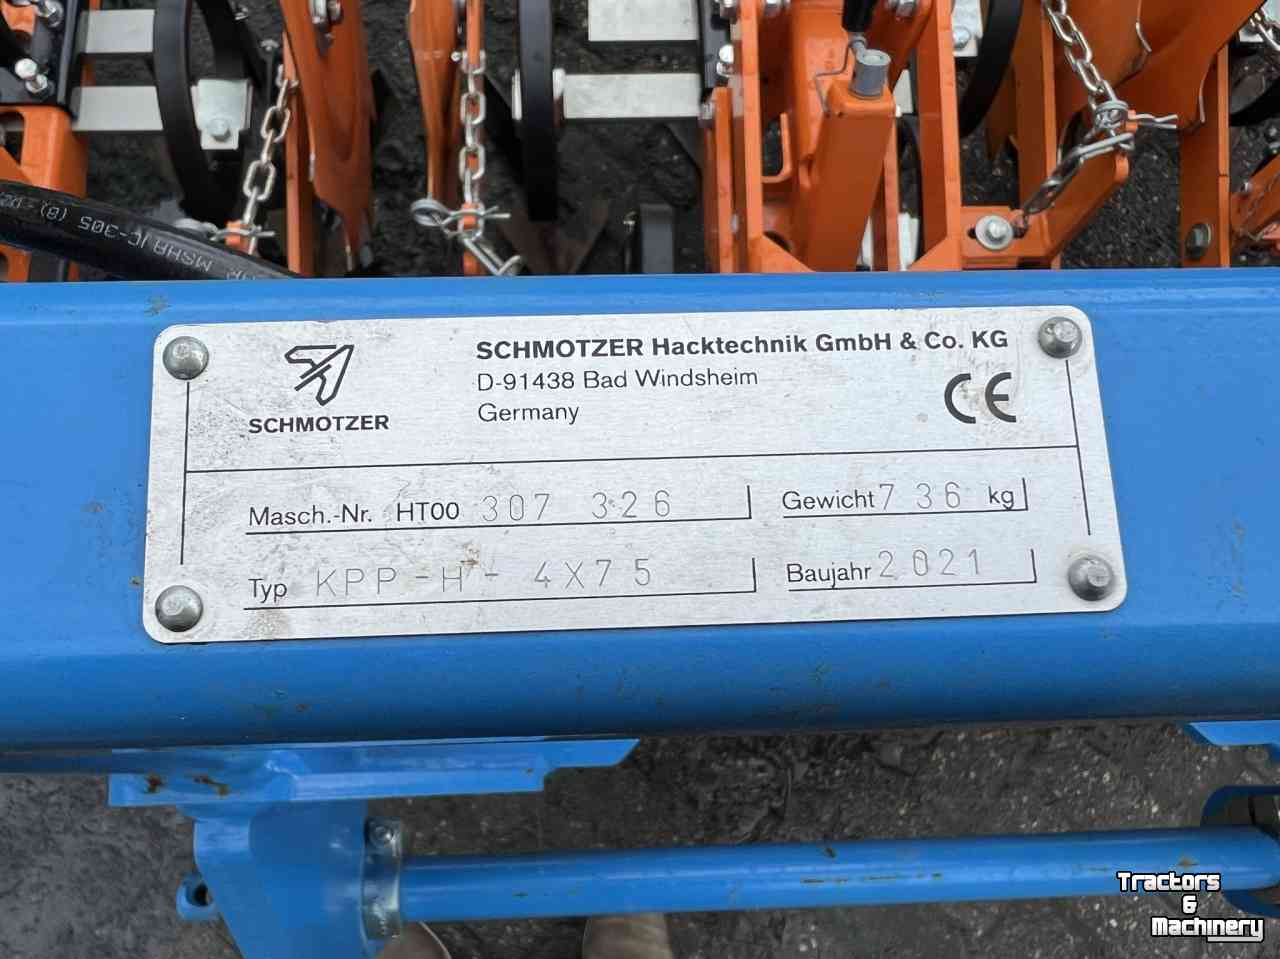 Hackmaschine Schmotzer KPP-H-4x75 schoffelmachine